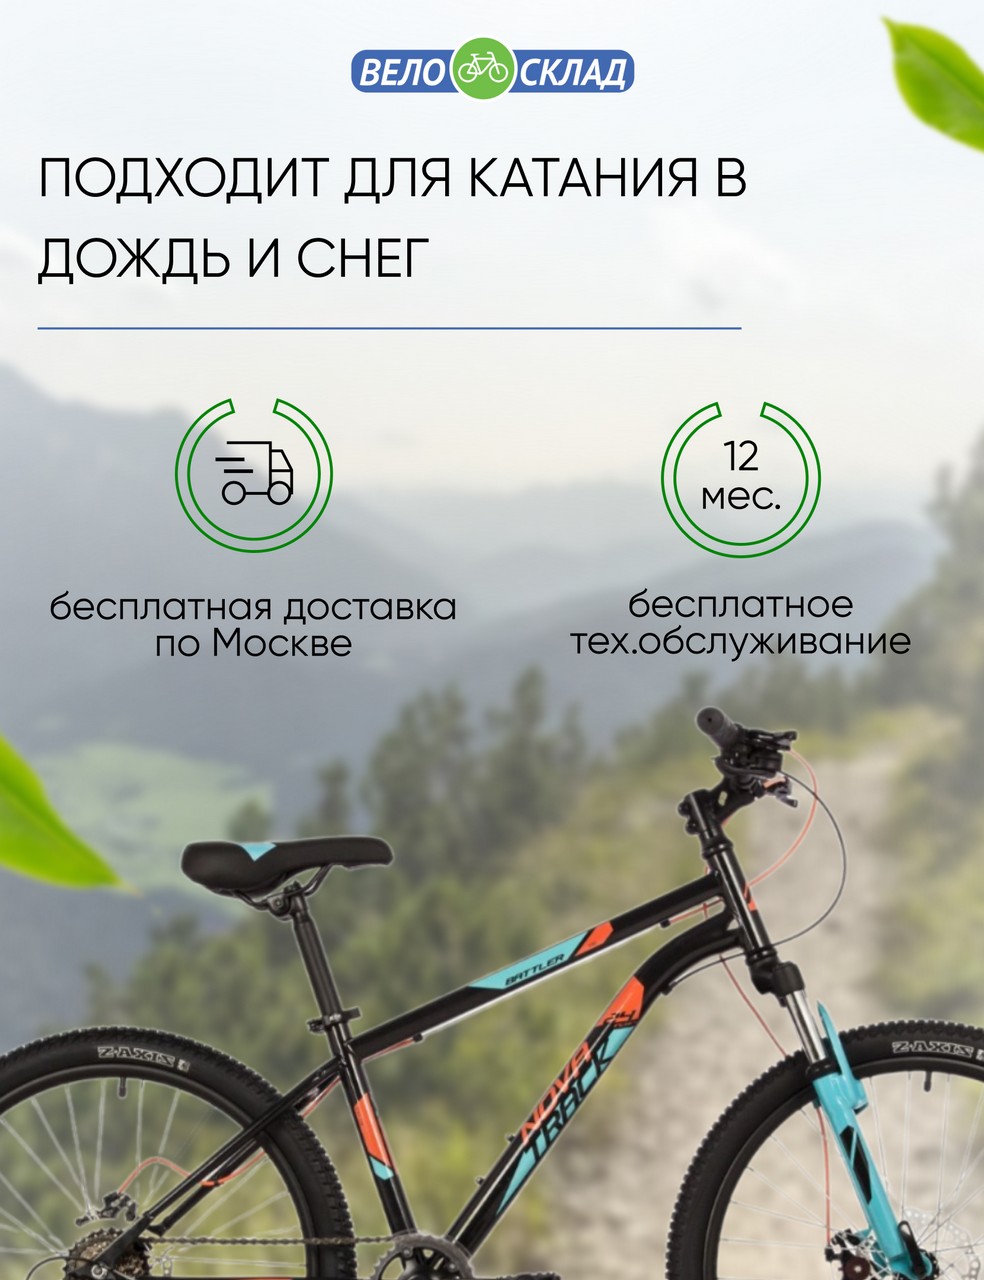 Подростковый велосипед Novatrack Battler 24 Disc, год 2023, цвет Черный, ростовка 14